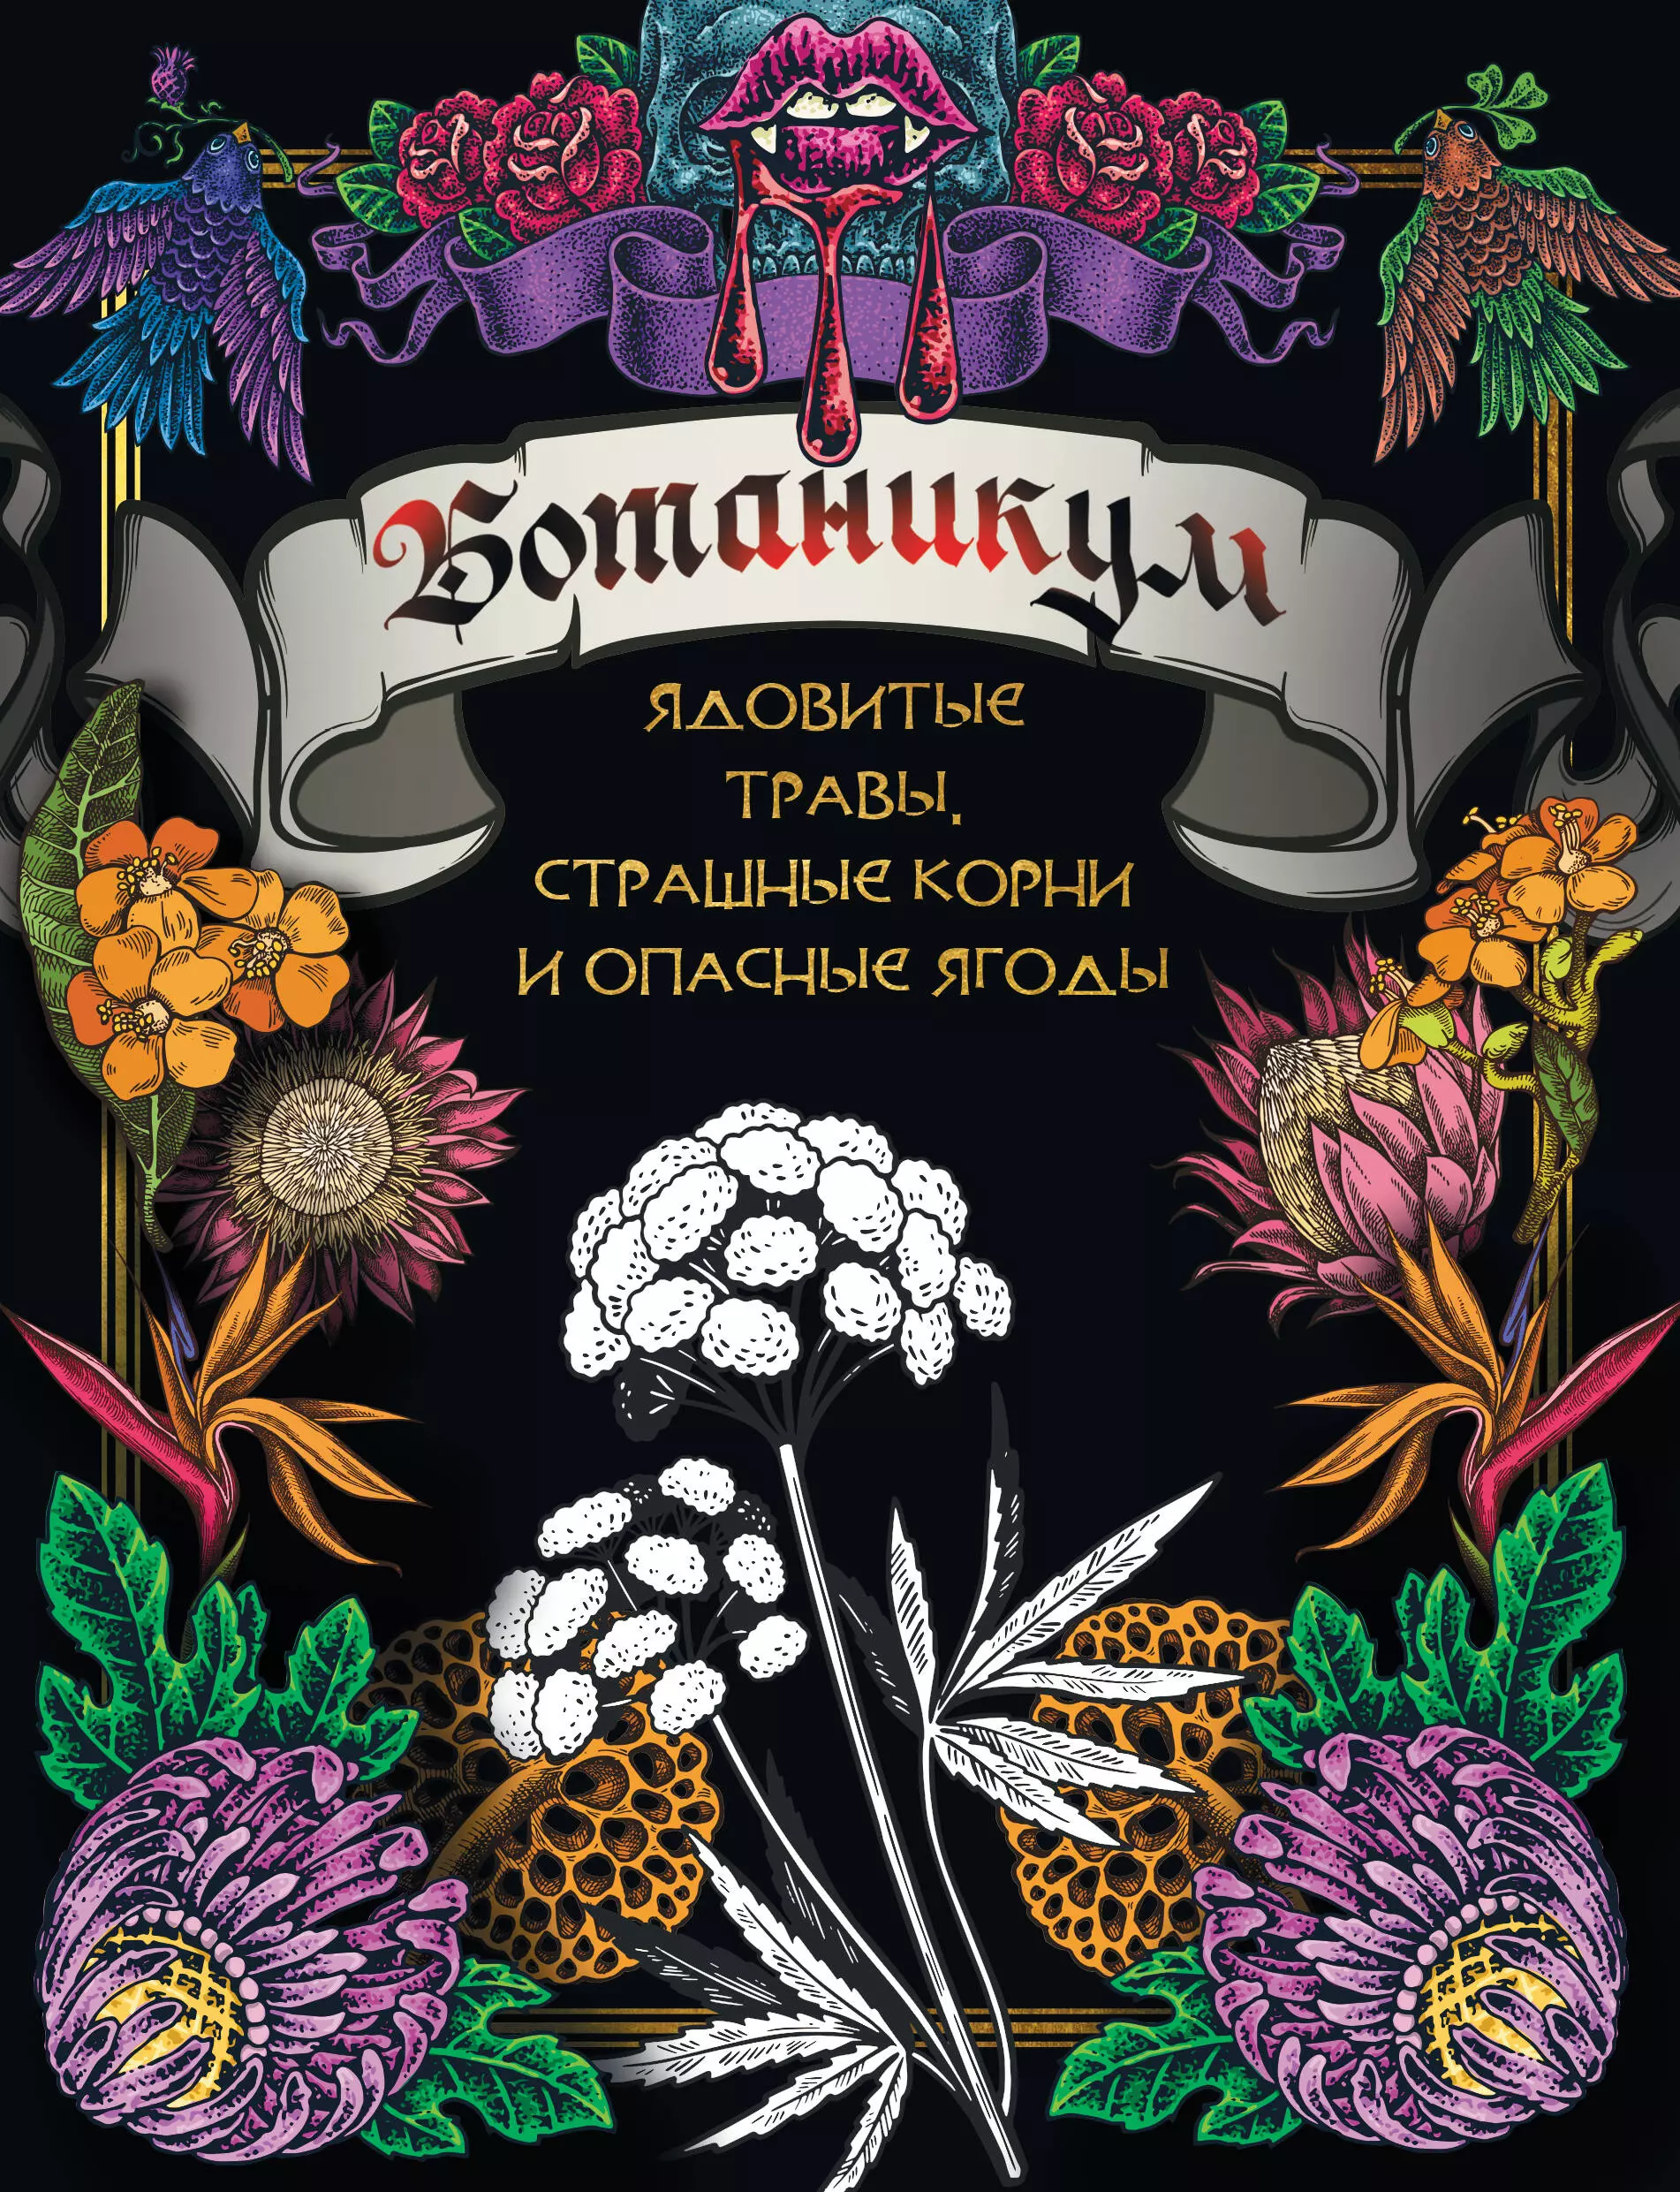 Попова Анастасия - Ботаникум: ядовитые травы, страшные корни и опасные ягоды